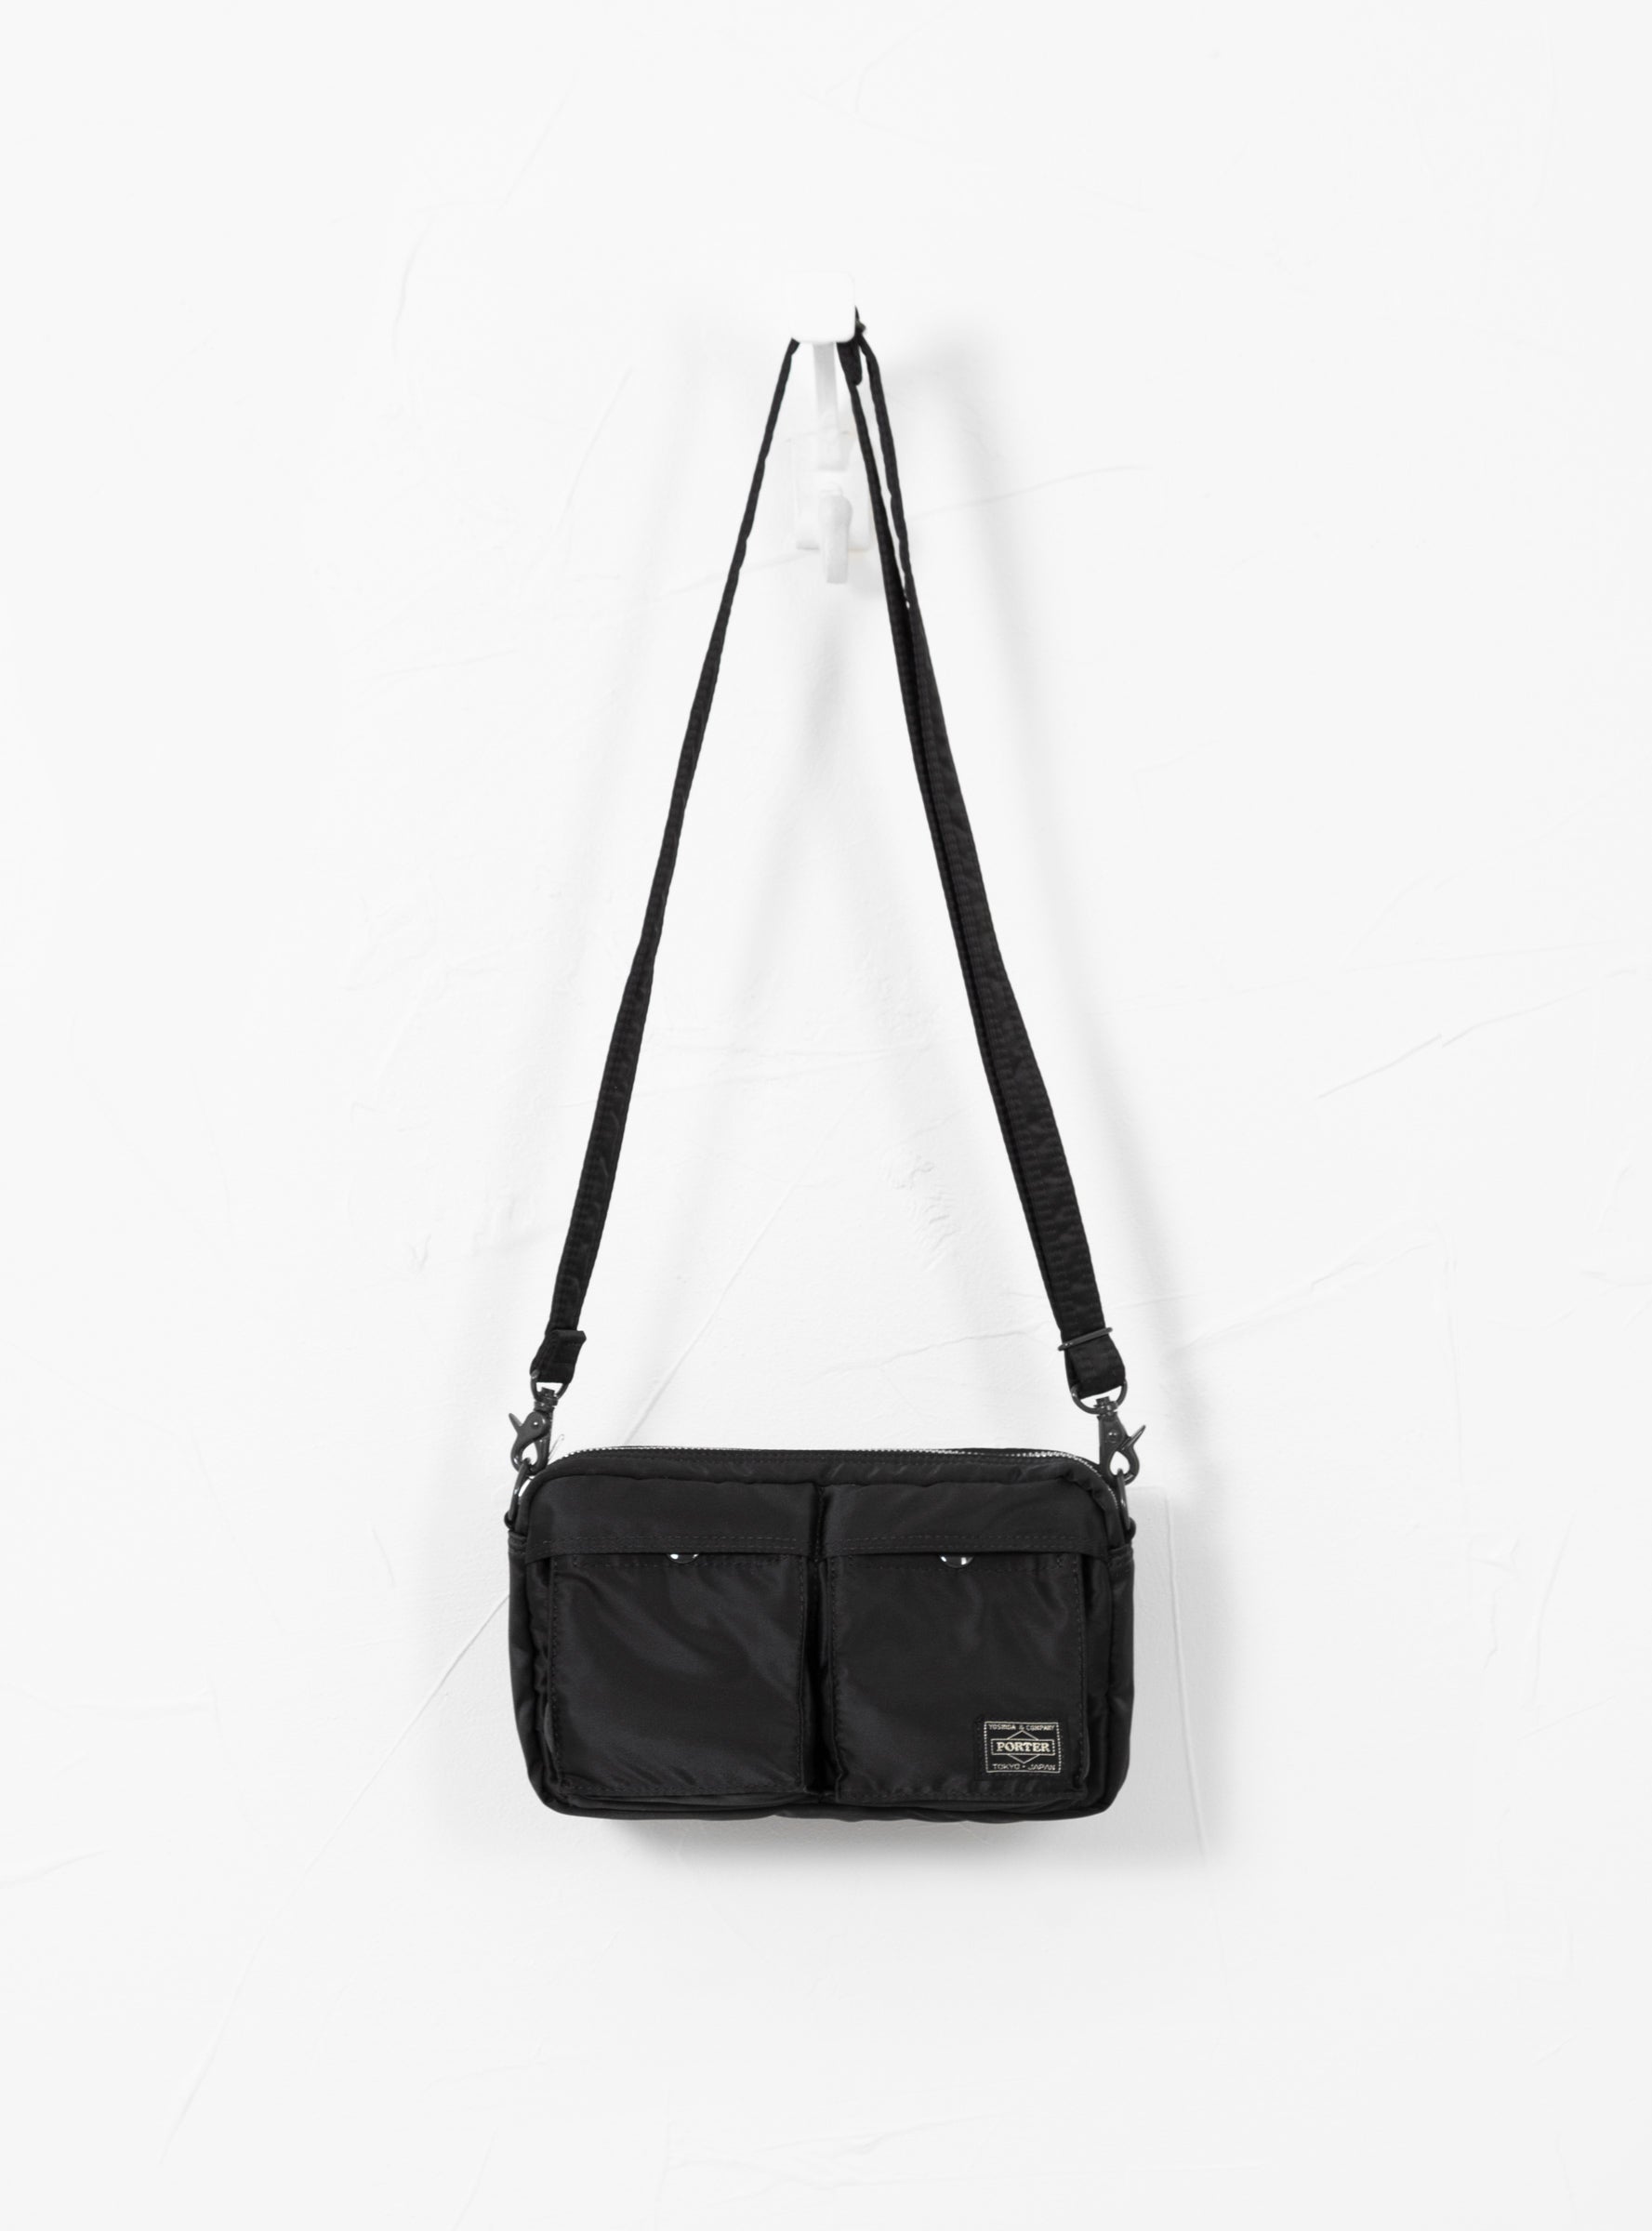 TANKER Clip Shoulder Bag Black by Porter Yoshida & Co